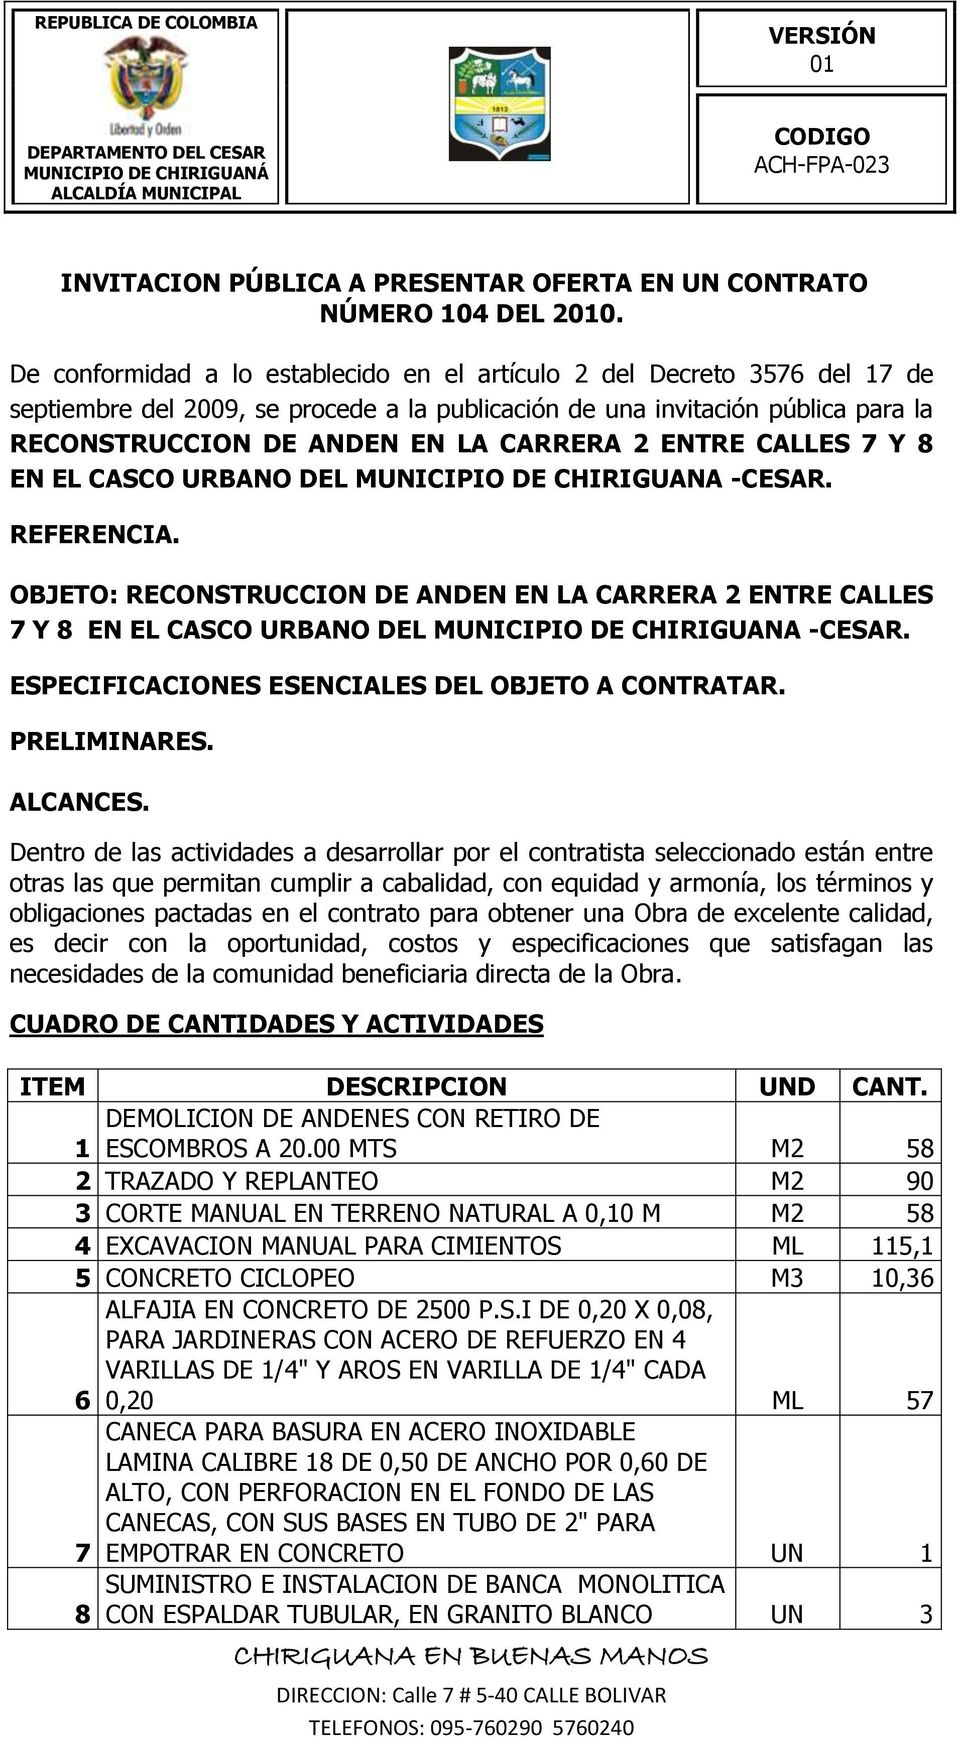 ENTRE CALLES 7 Y 8 EN EL CASCO URBANO DEL MUNICIPIO DE CHIRIGUANA -CESAR. REFERENCIA.